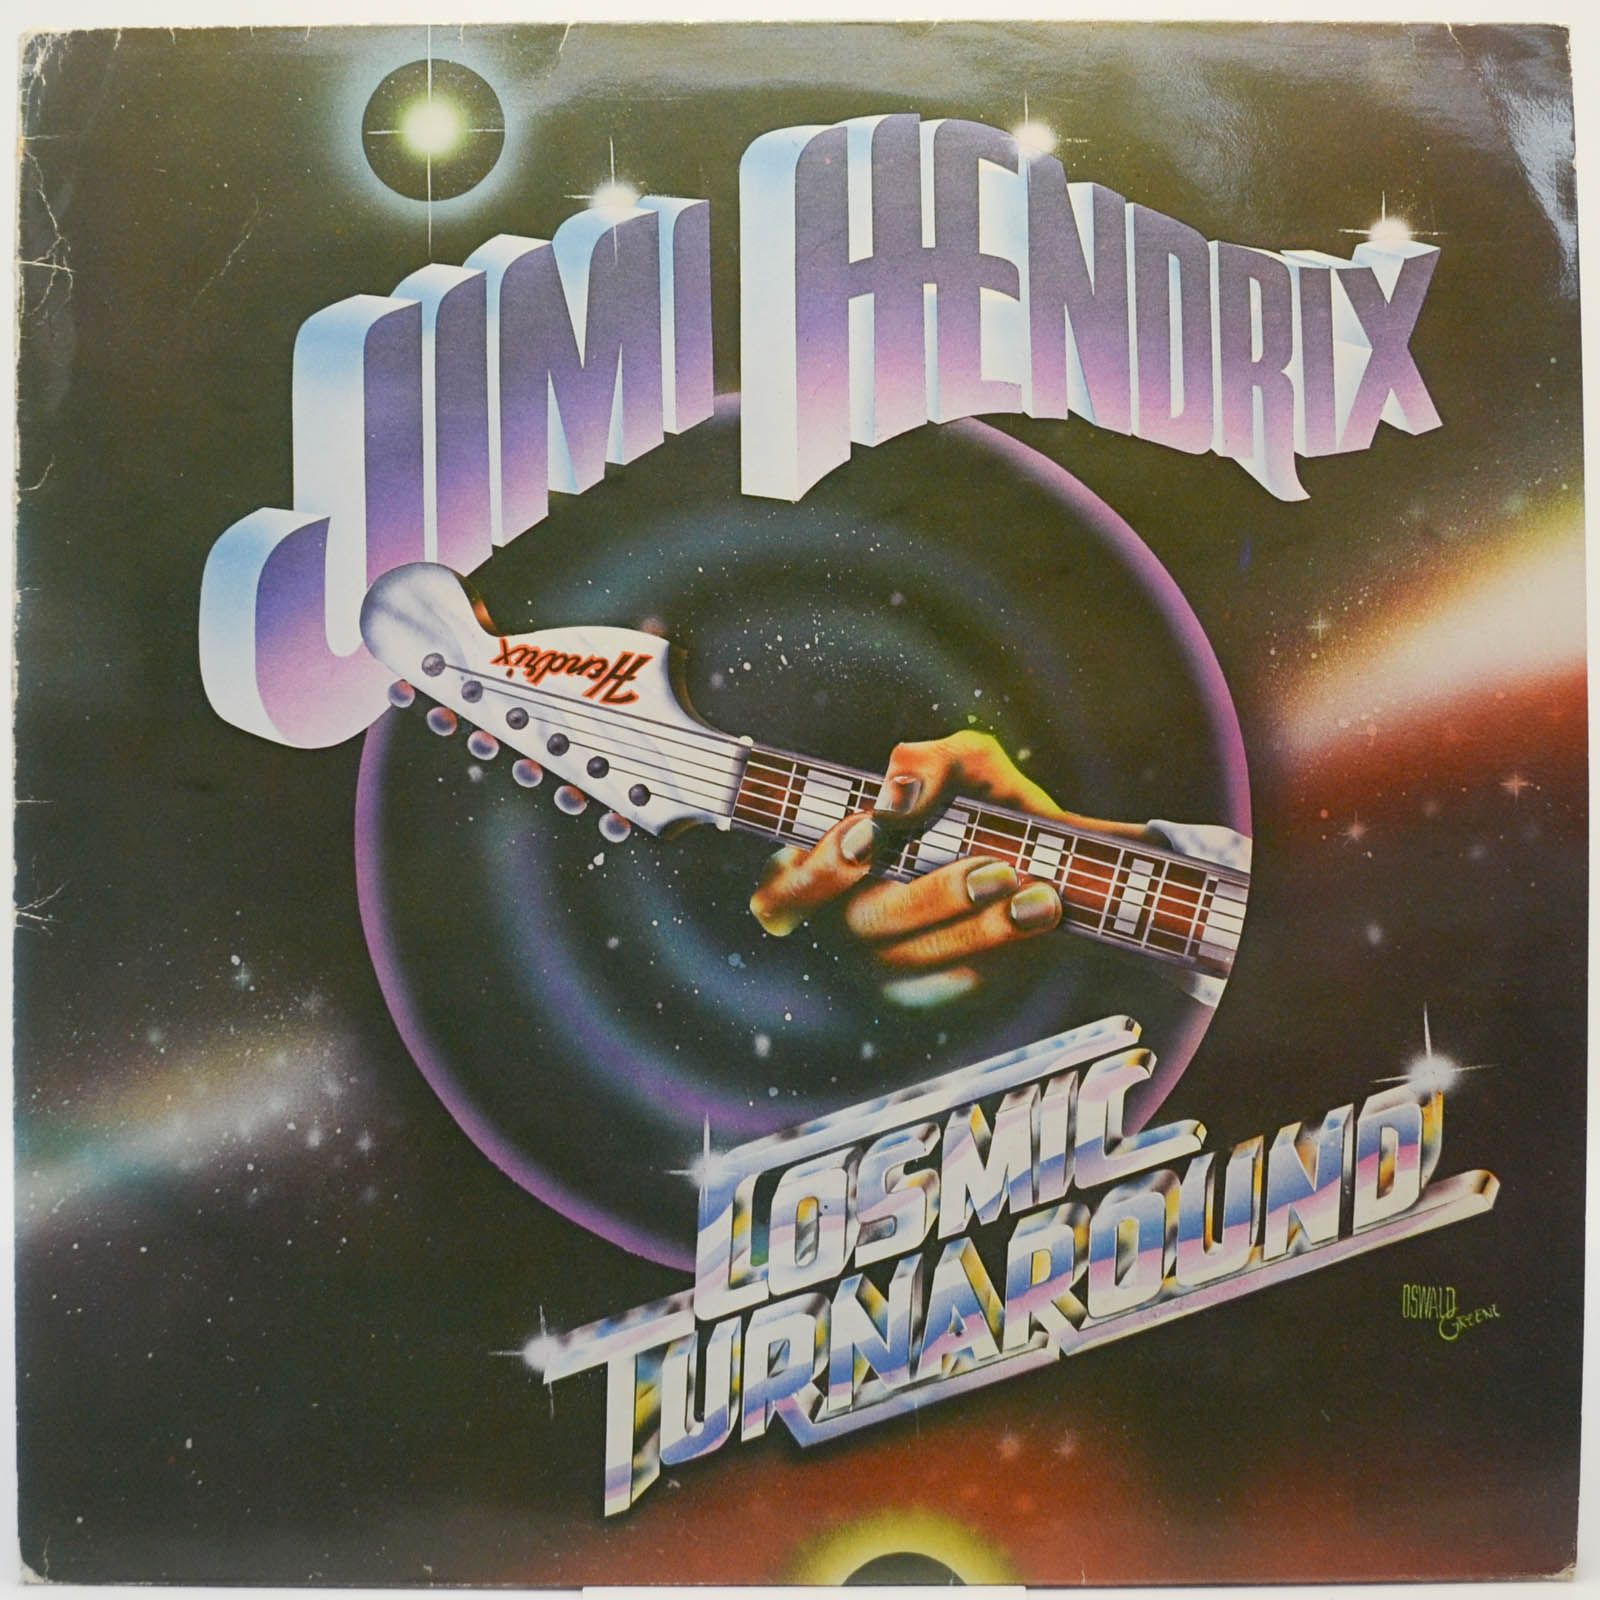 Jimi Hendrix — Cosmic Turnaround (UK), 1981